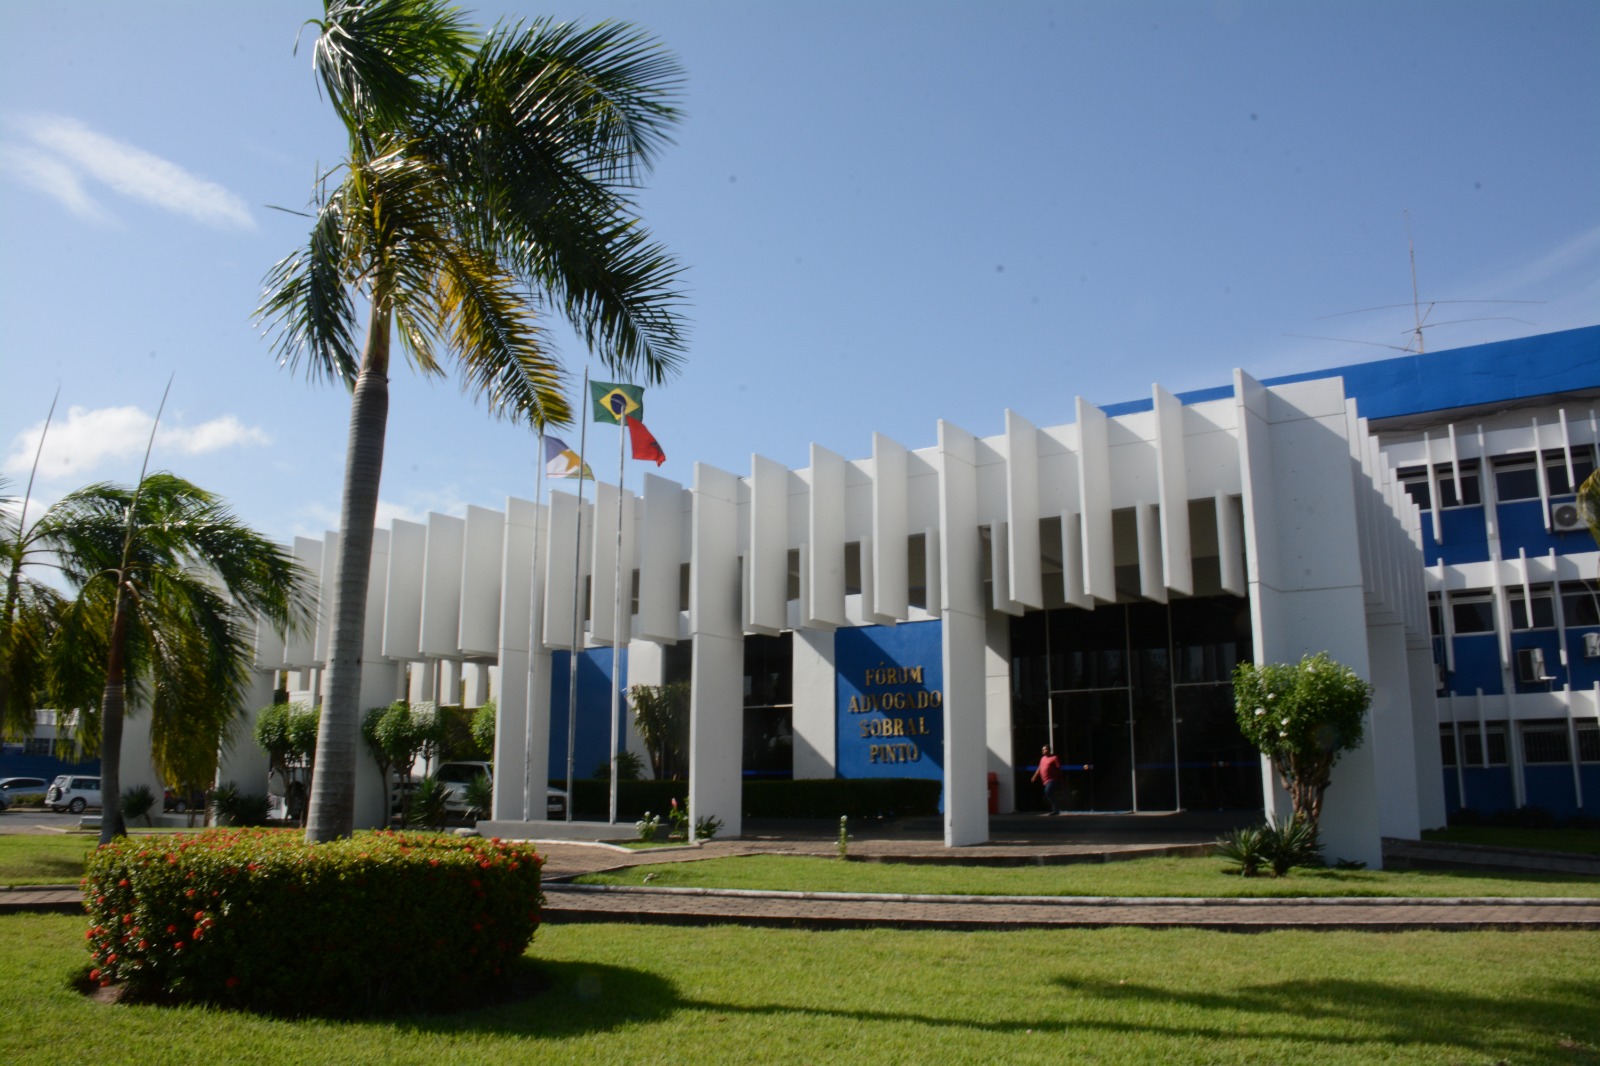  Imagem colorida em formato retangular mostra a fachada arborizada do Fórum Advogado Sobral Pinto, o prédio possui três andares e  está pintado nos tons branco e azul.